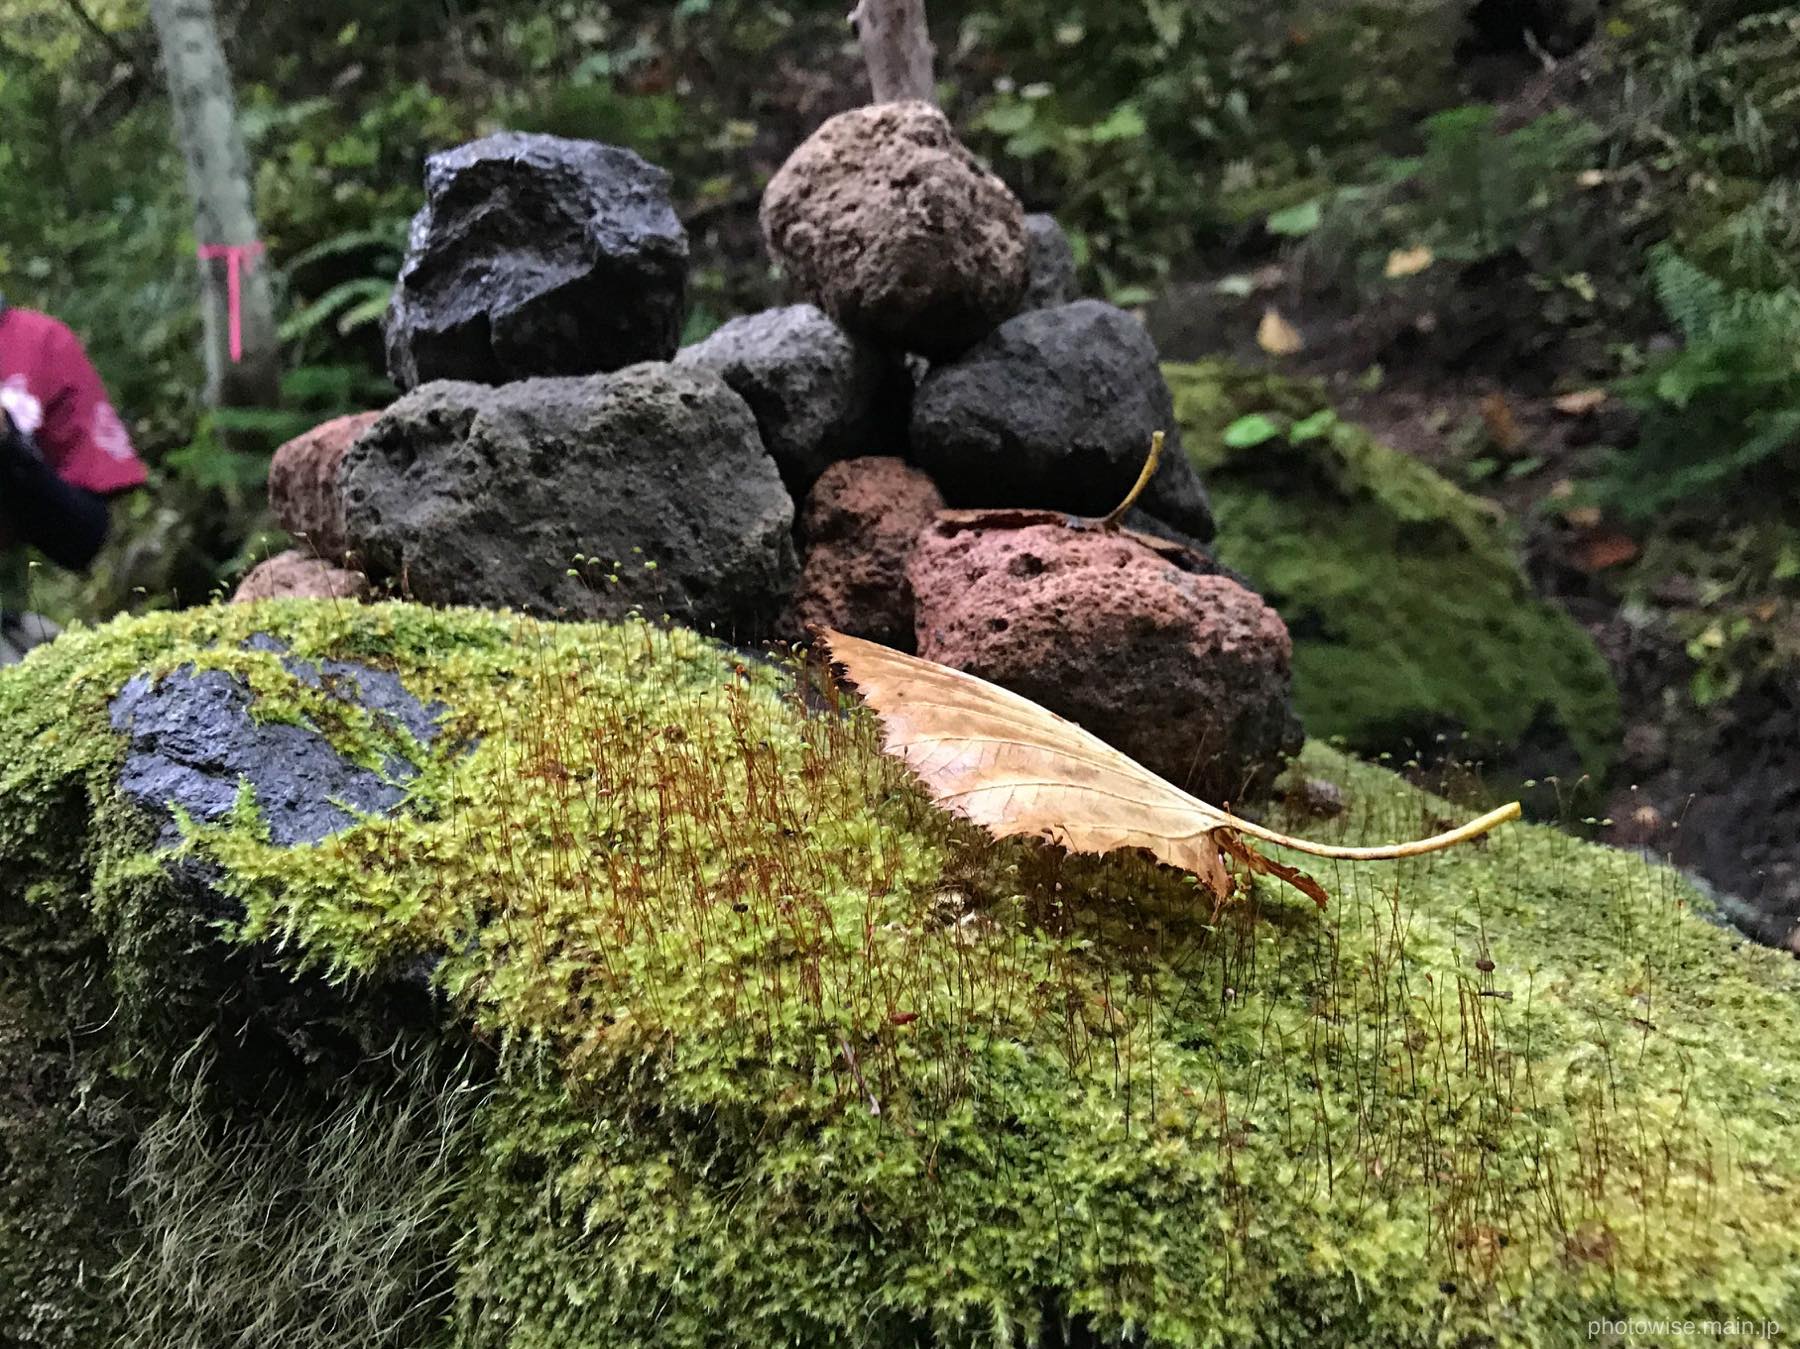 苔と石